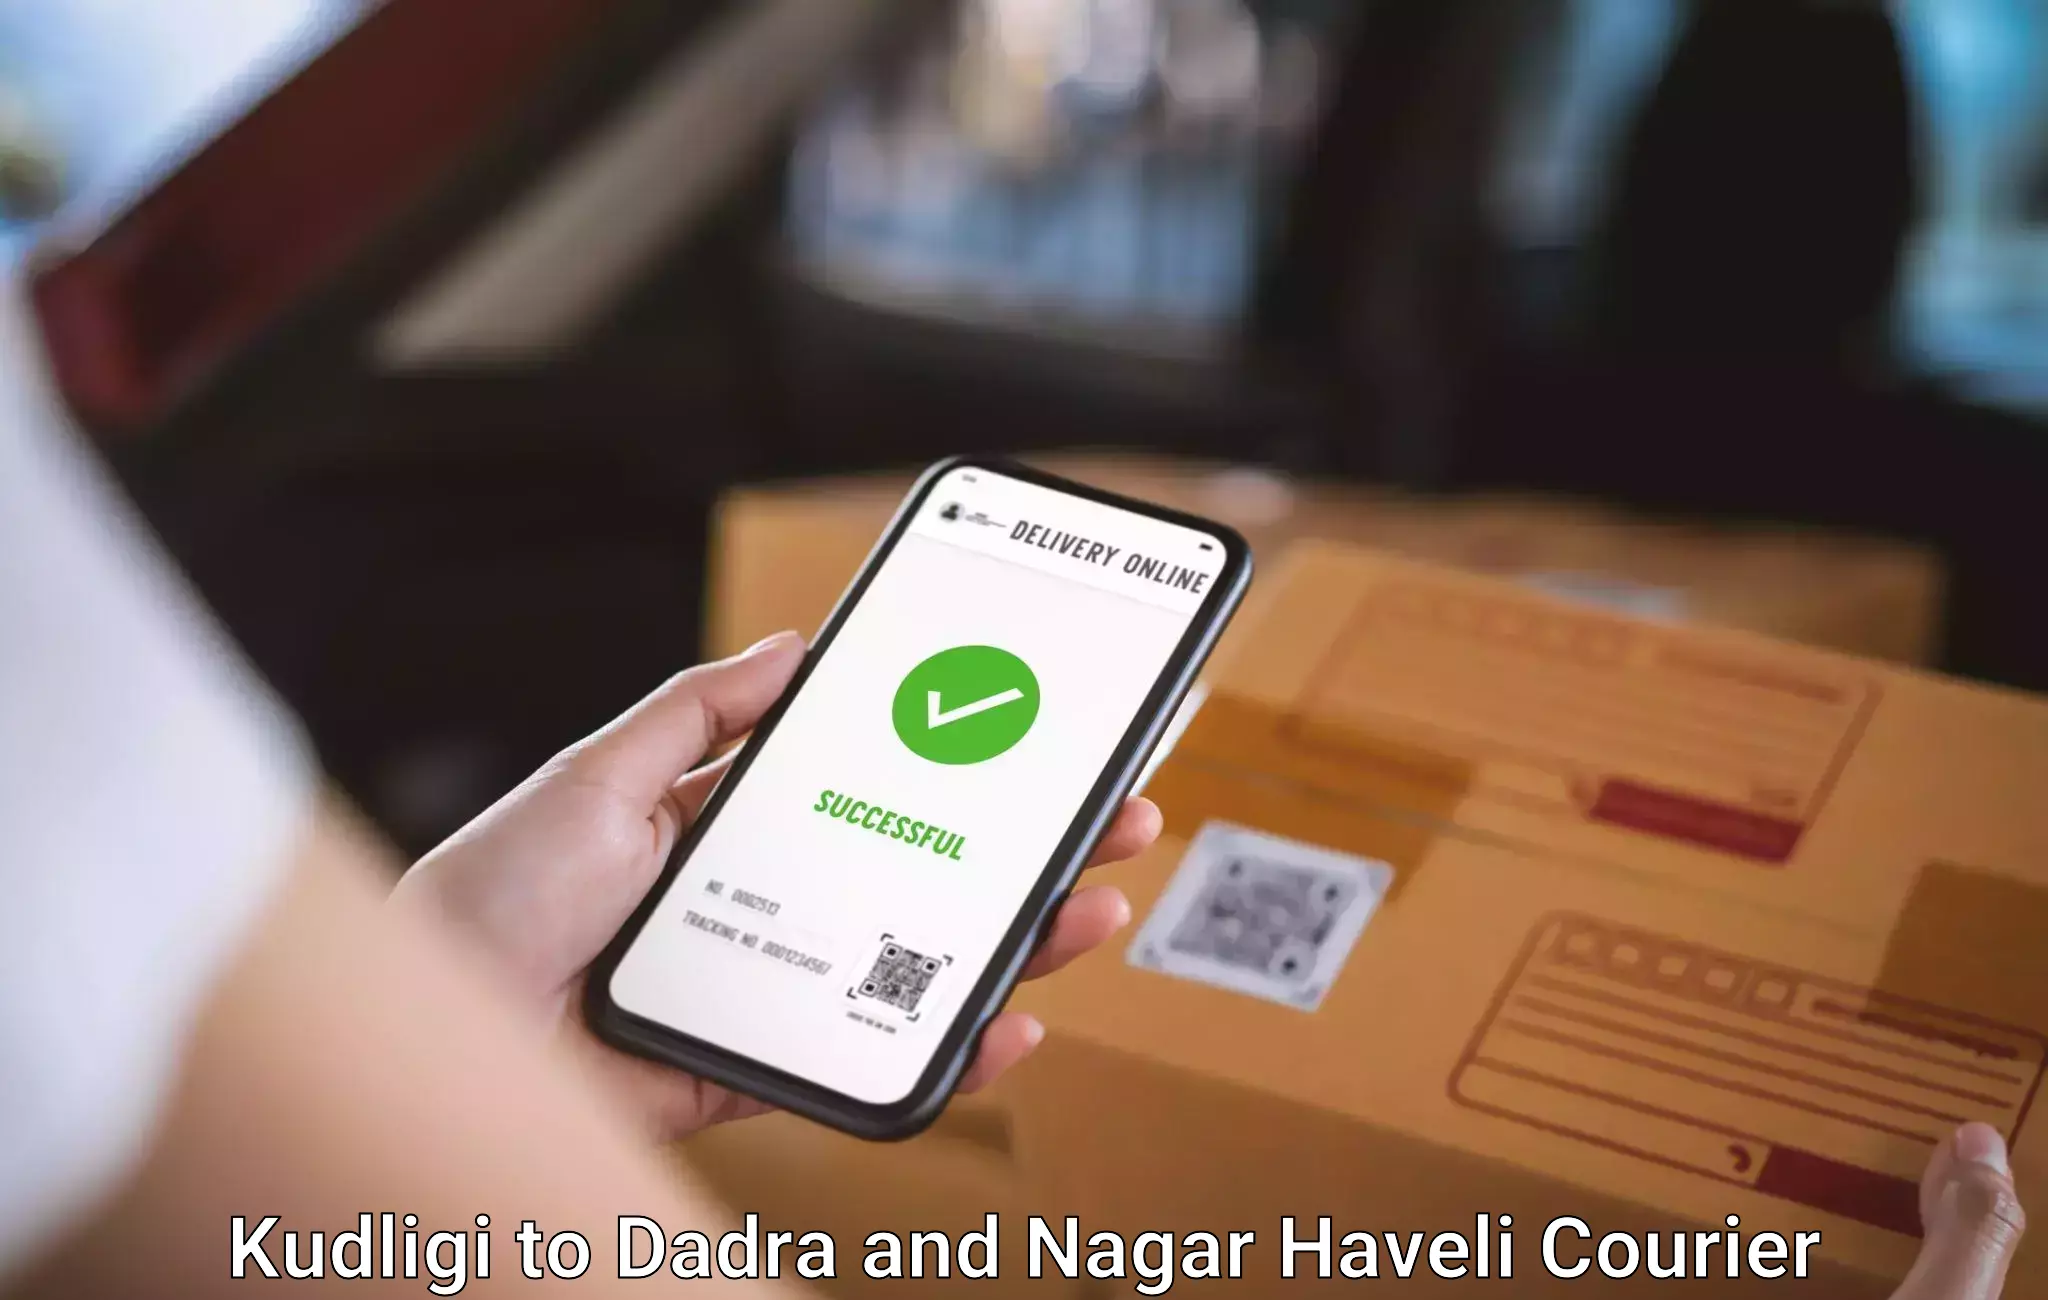 Hassle-free luggage shipping Kudligi to Dadra and Nagar Haveli